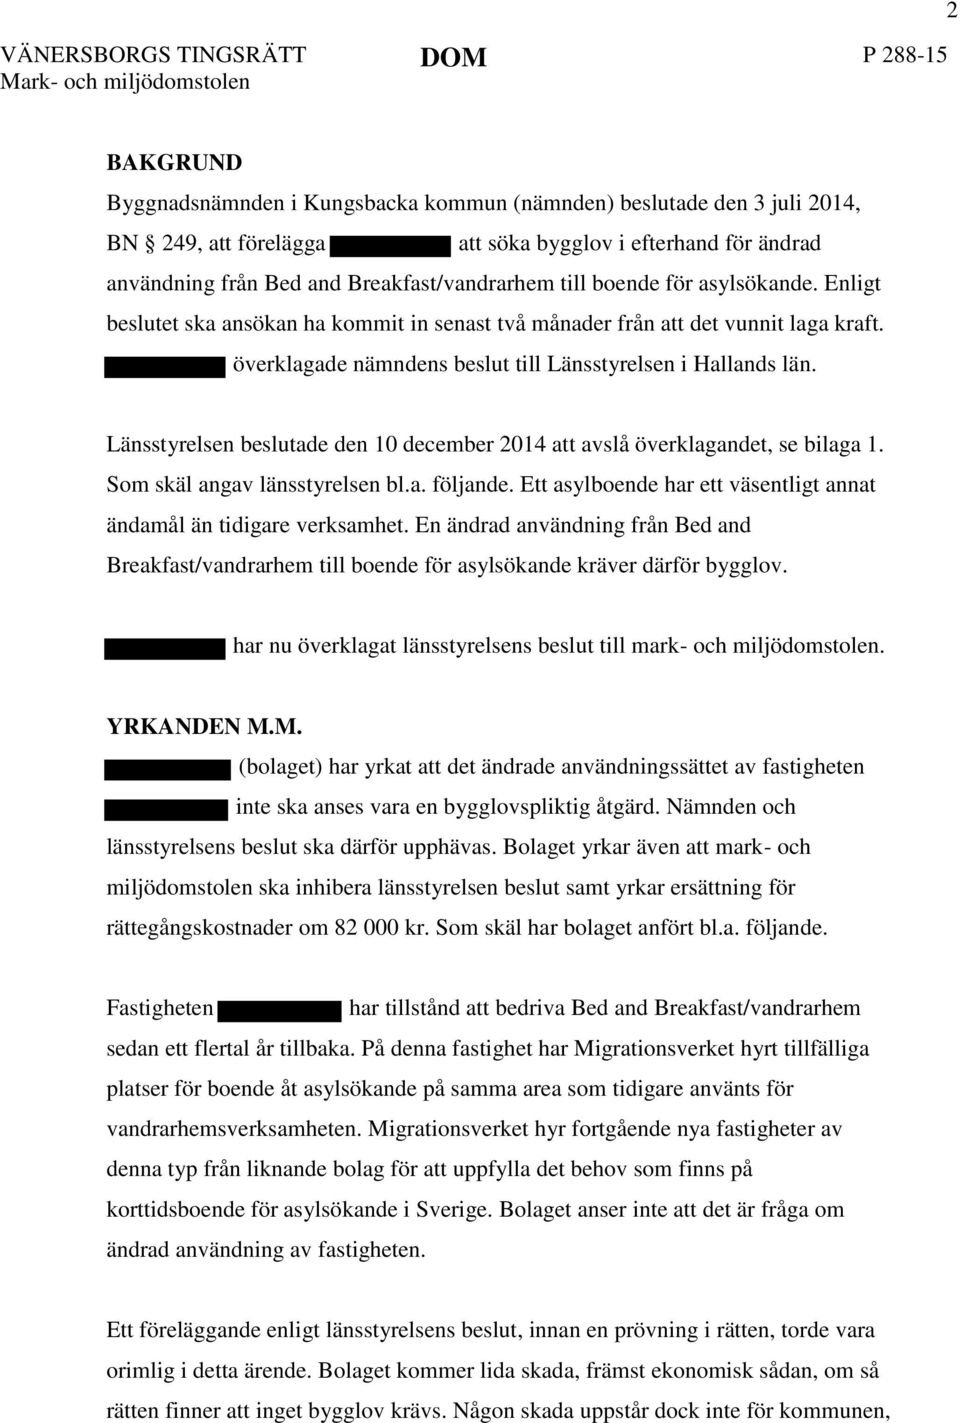 överklagade nämndens beslut till Länsstyrelsen i Hallands län. Länsstyrelsen beslutade den 10 december 2014 att avslå överklagandet, se bilaga 1. Som skäl angav länsstyrelsen bl.a. följande.